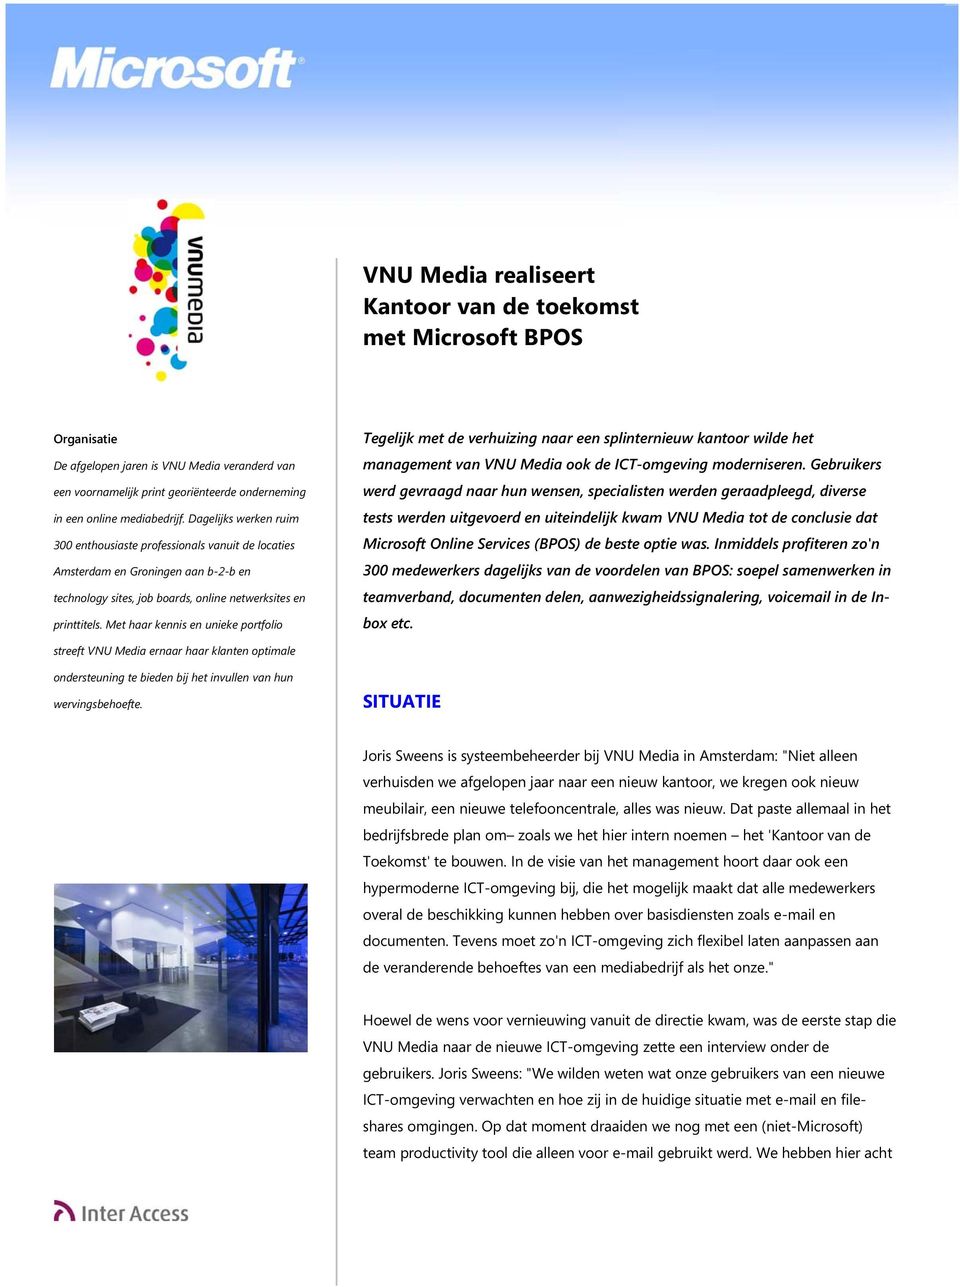 Met haar kennis en unieke portfolio Tegelijk met de verhuizing naar een splinternieuw kantoor wilde het management van VNU Media ook de ICT-omgeving moderniseren.